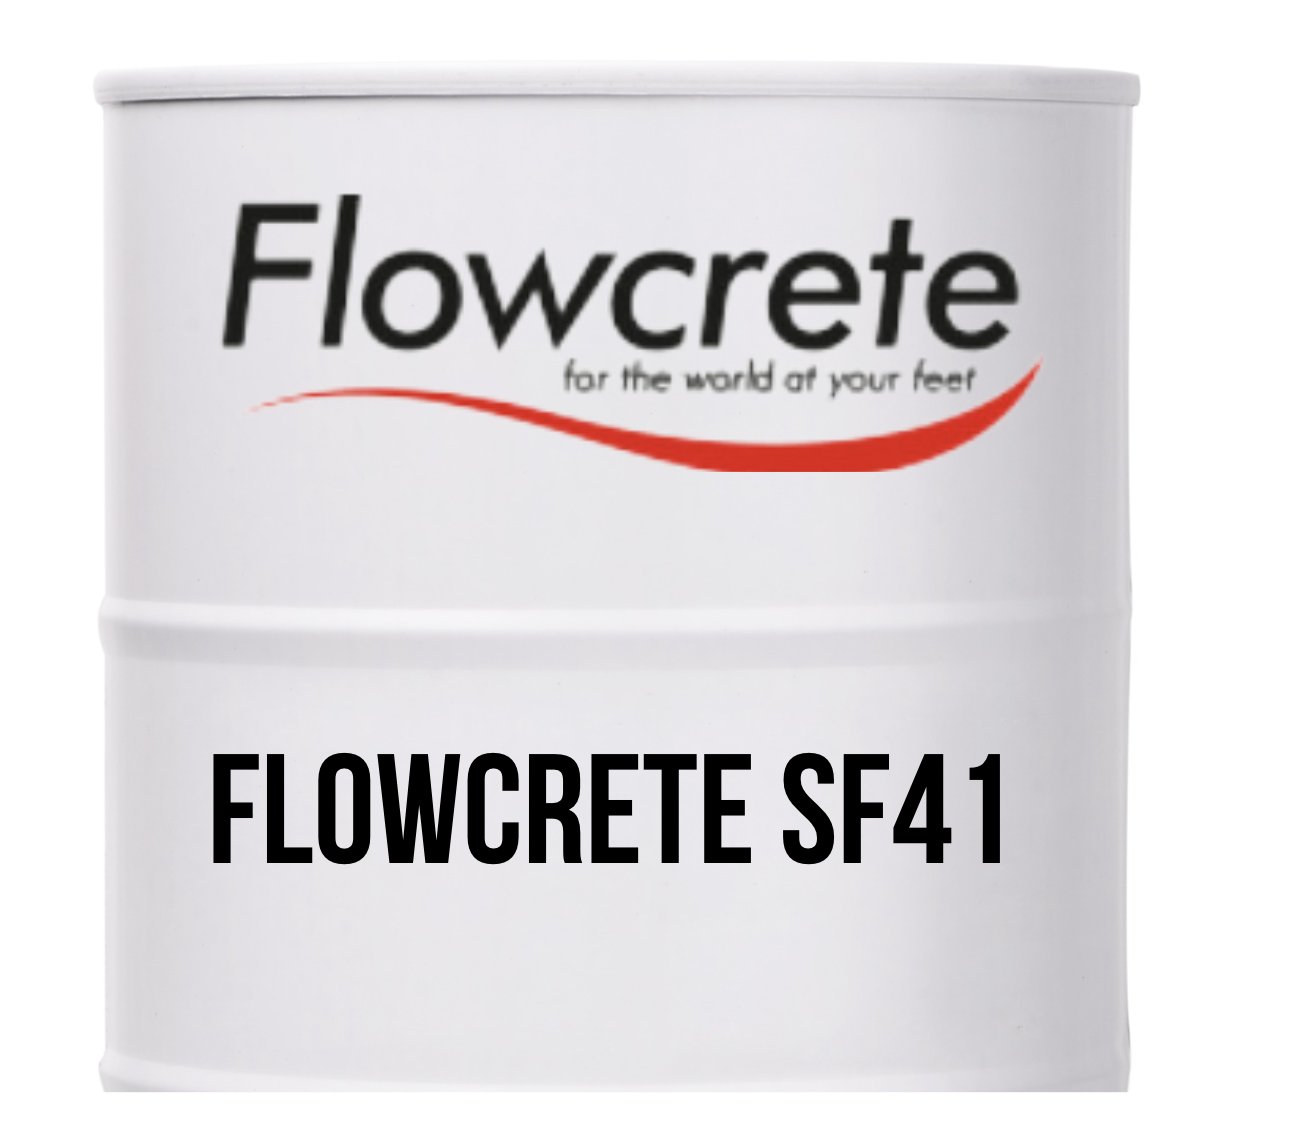 Flowcrete Flowcoat SF41